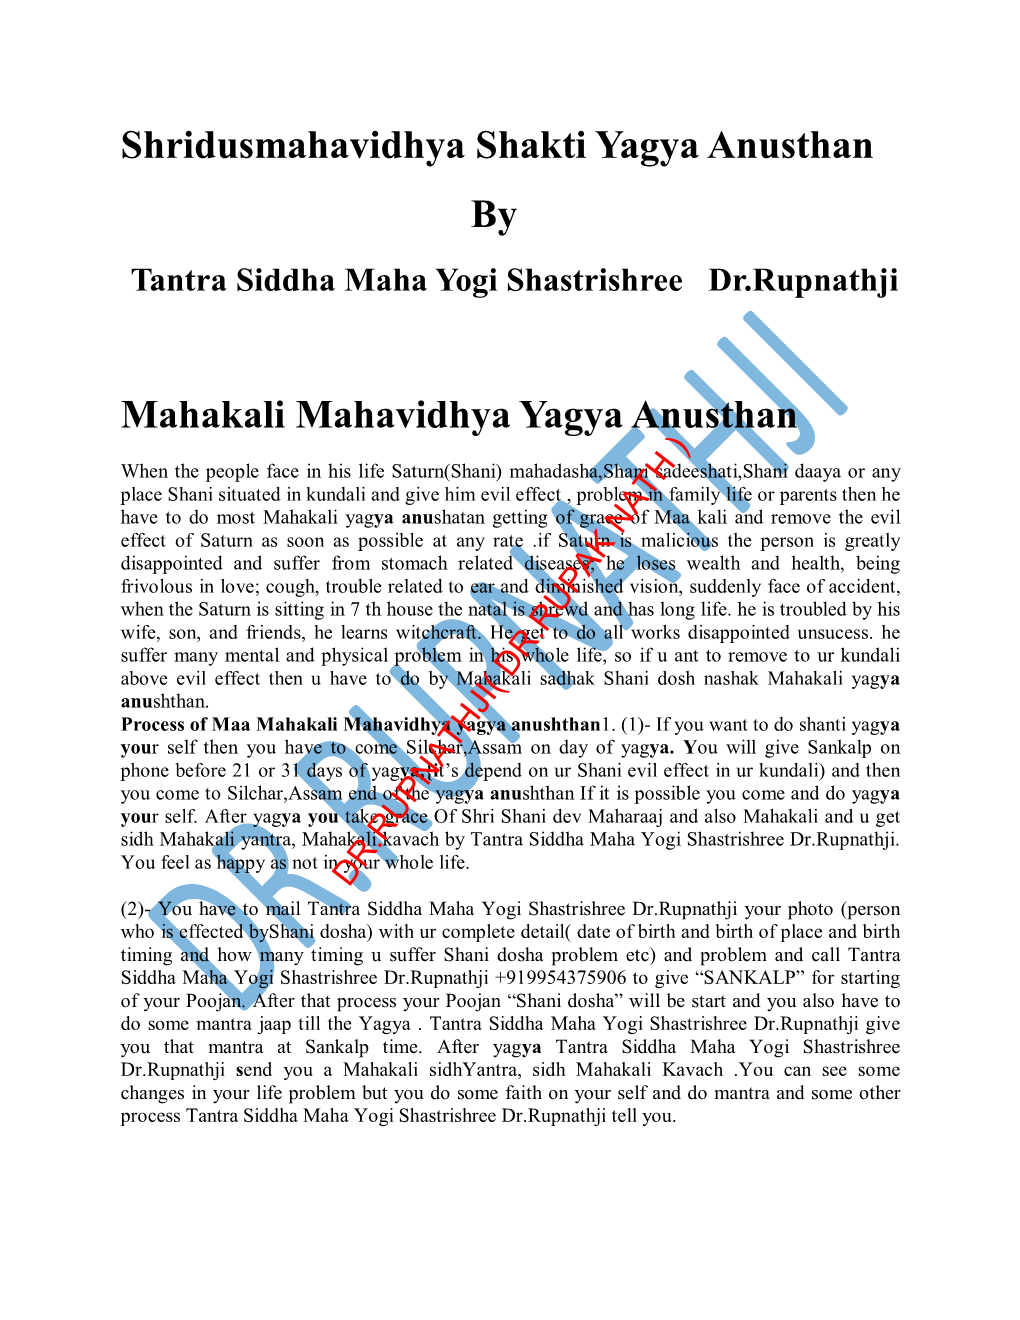 Shridusmahavidhya Shakti Yagya Anusthan by Mahakali Mahavidhya